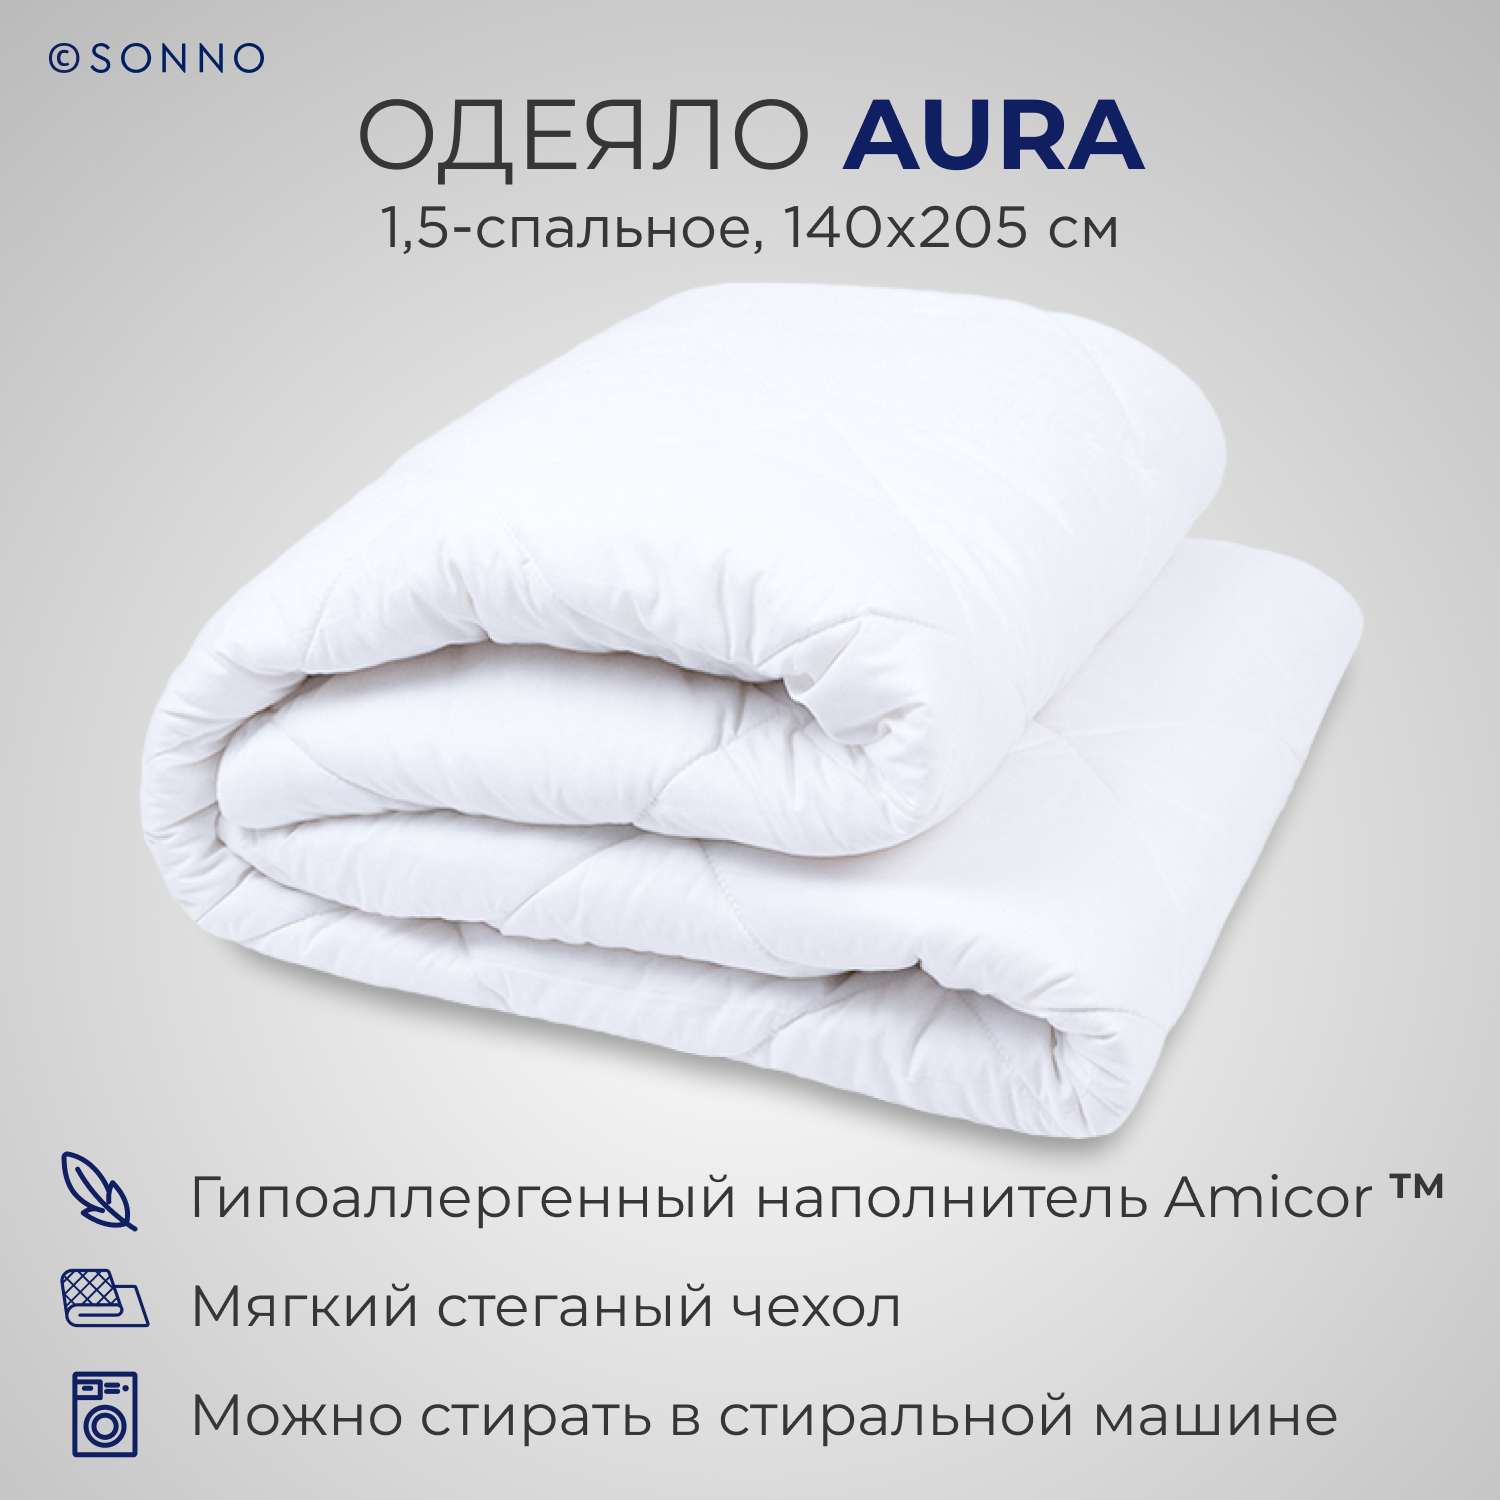 Одеяло SONNO AURA 1.5 сп. 140х205 Amicor TM Цвет Ослепительно белый - фото 1